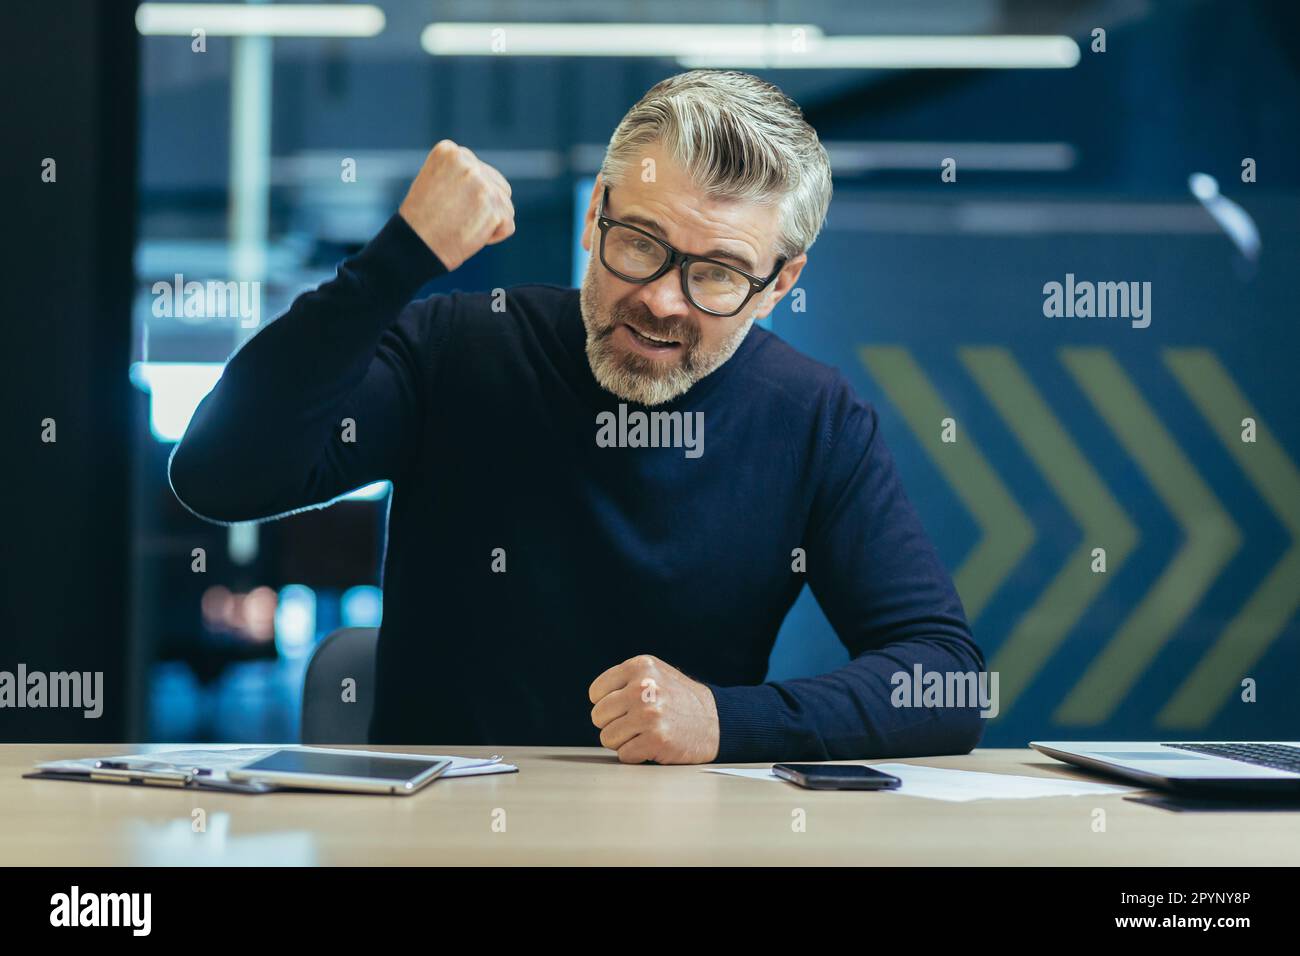 Ritratto di un uomo d'affari anziano arrabbiato seduto in ufficio davanti alla telecamera e gridando, gestendo aggressivamente con le mani, battendo il pugno sul tavolo in modo ordinato. Foto Stock